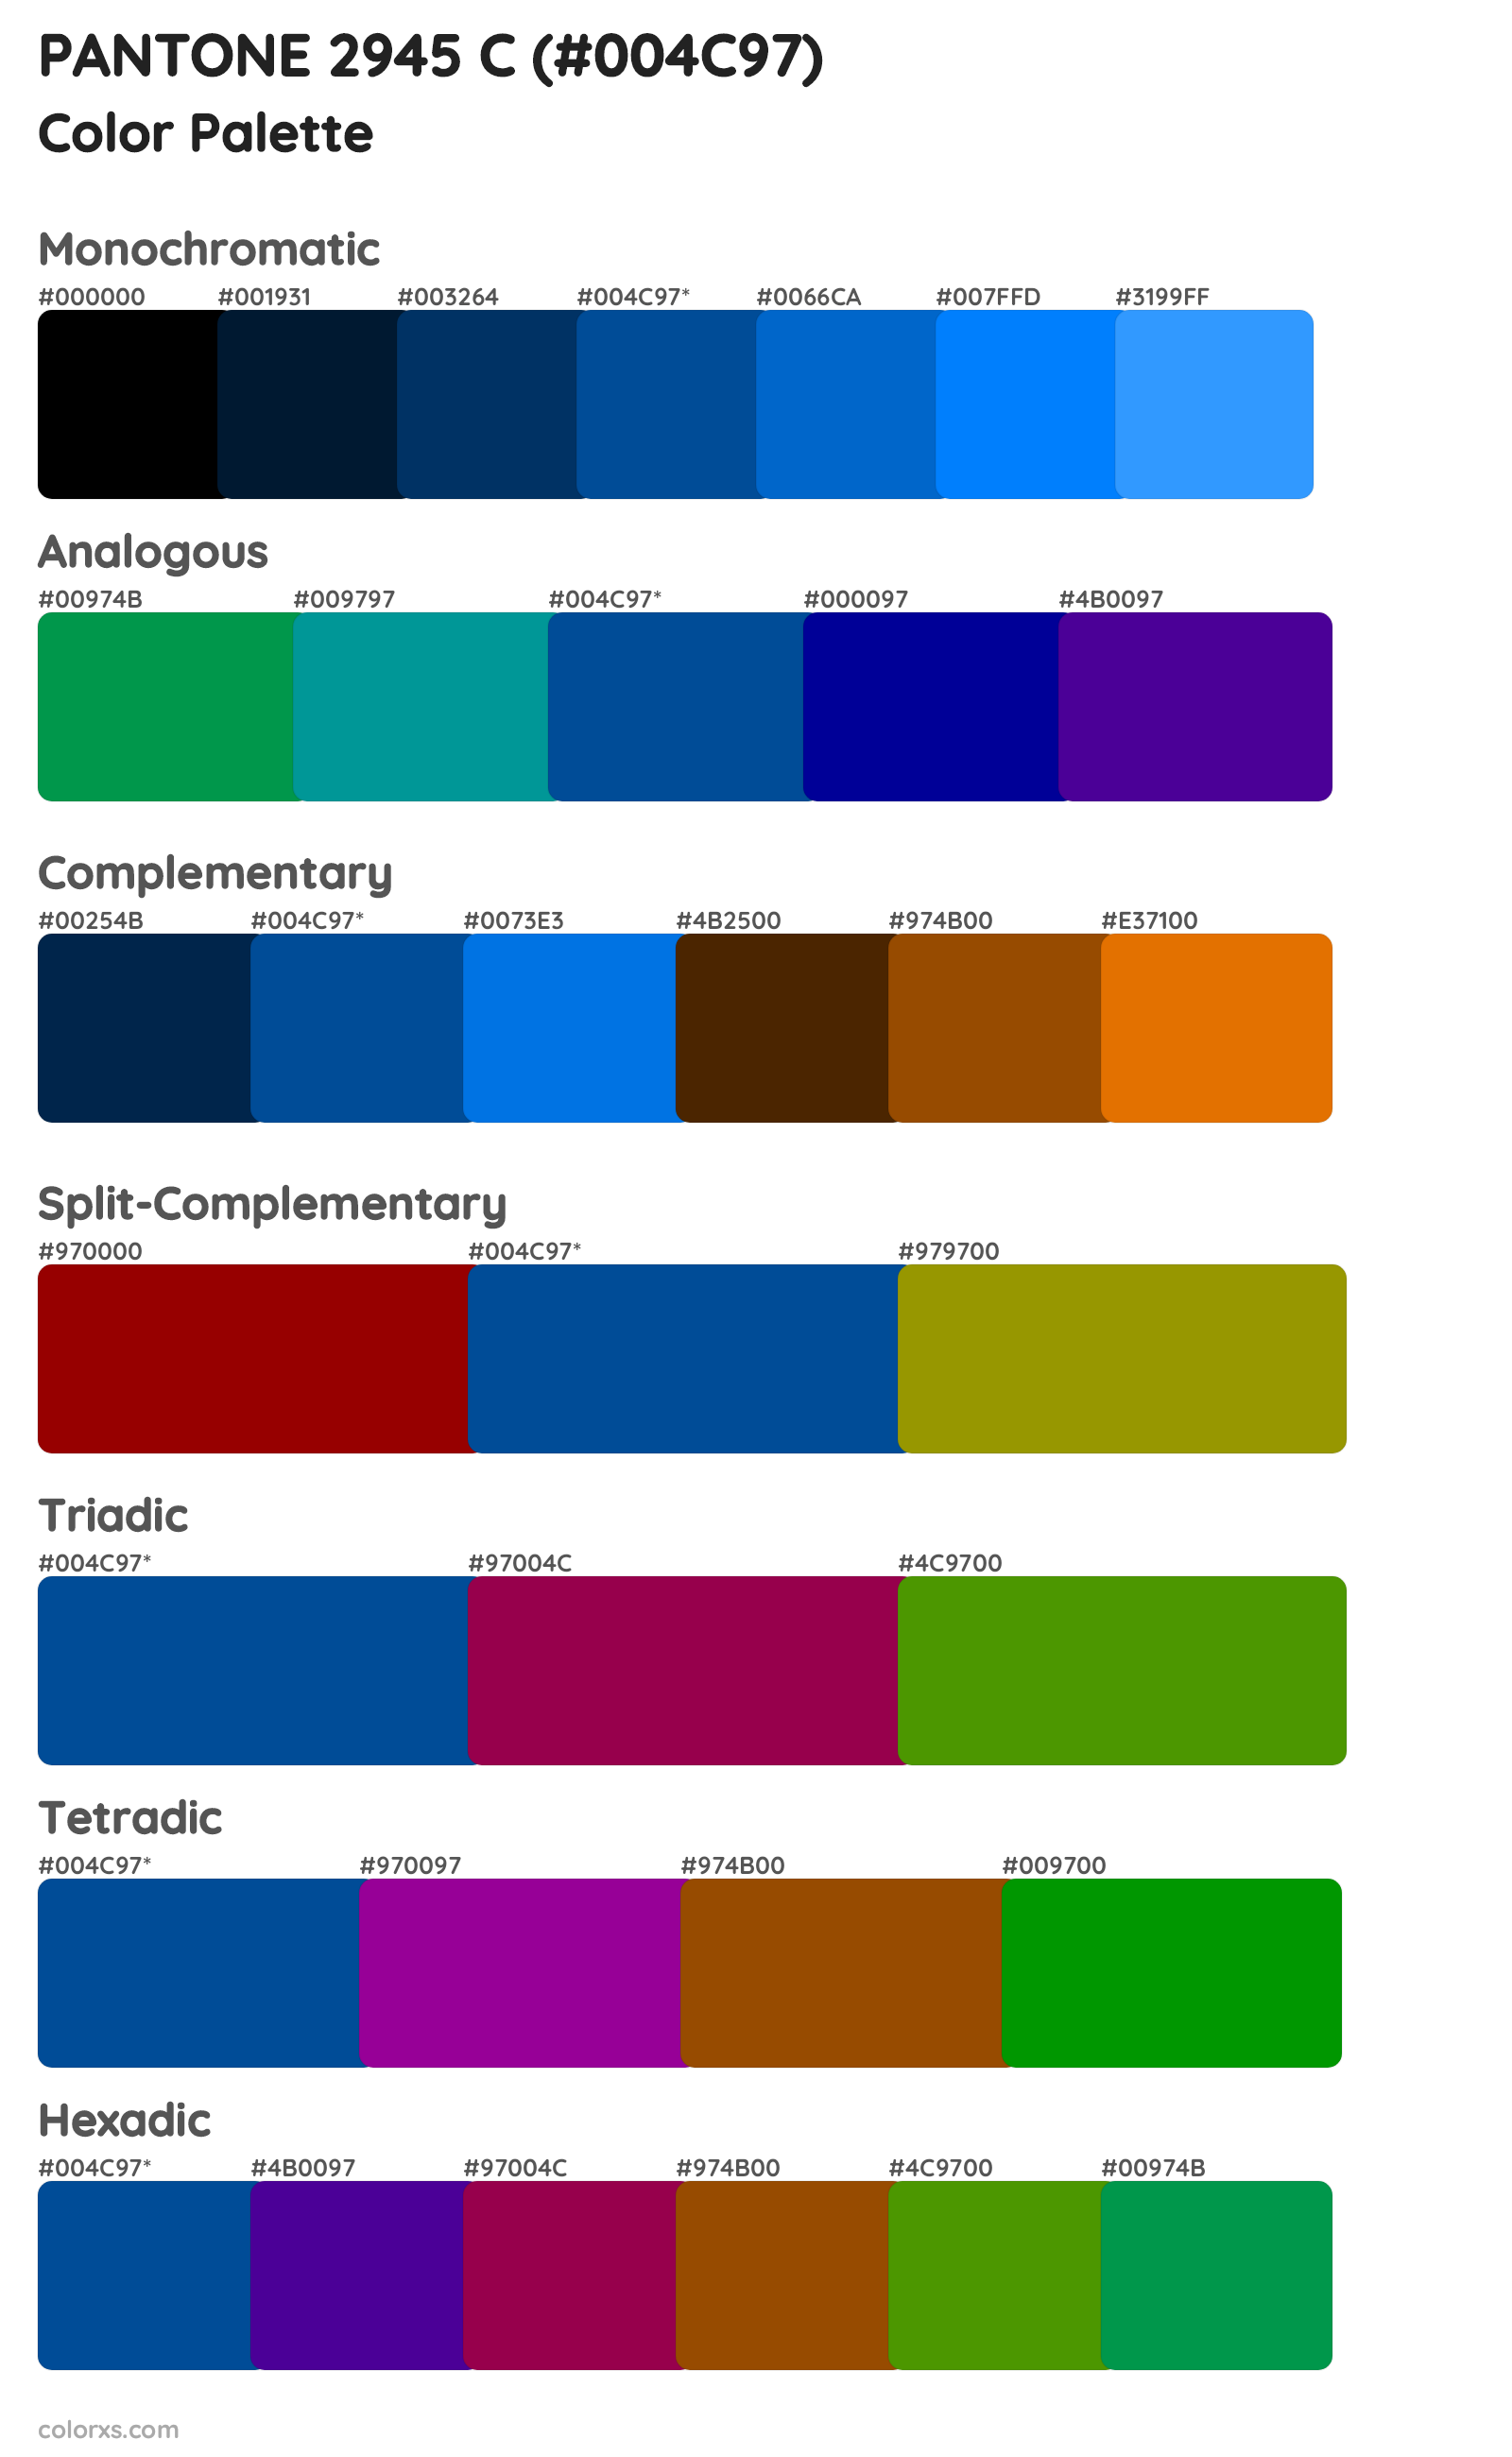 PANTONE 2945 C Color Scheme Palettes